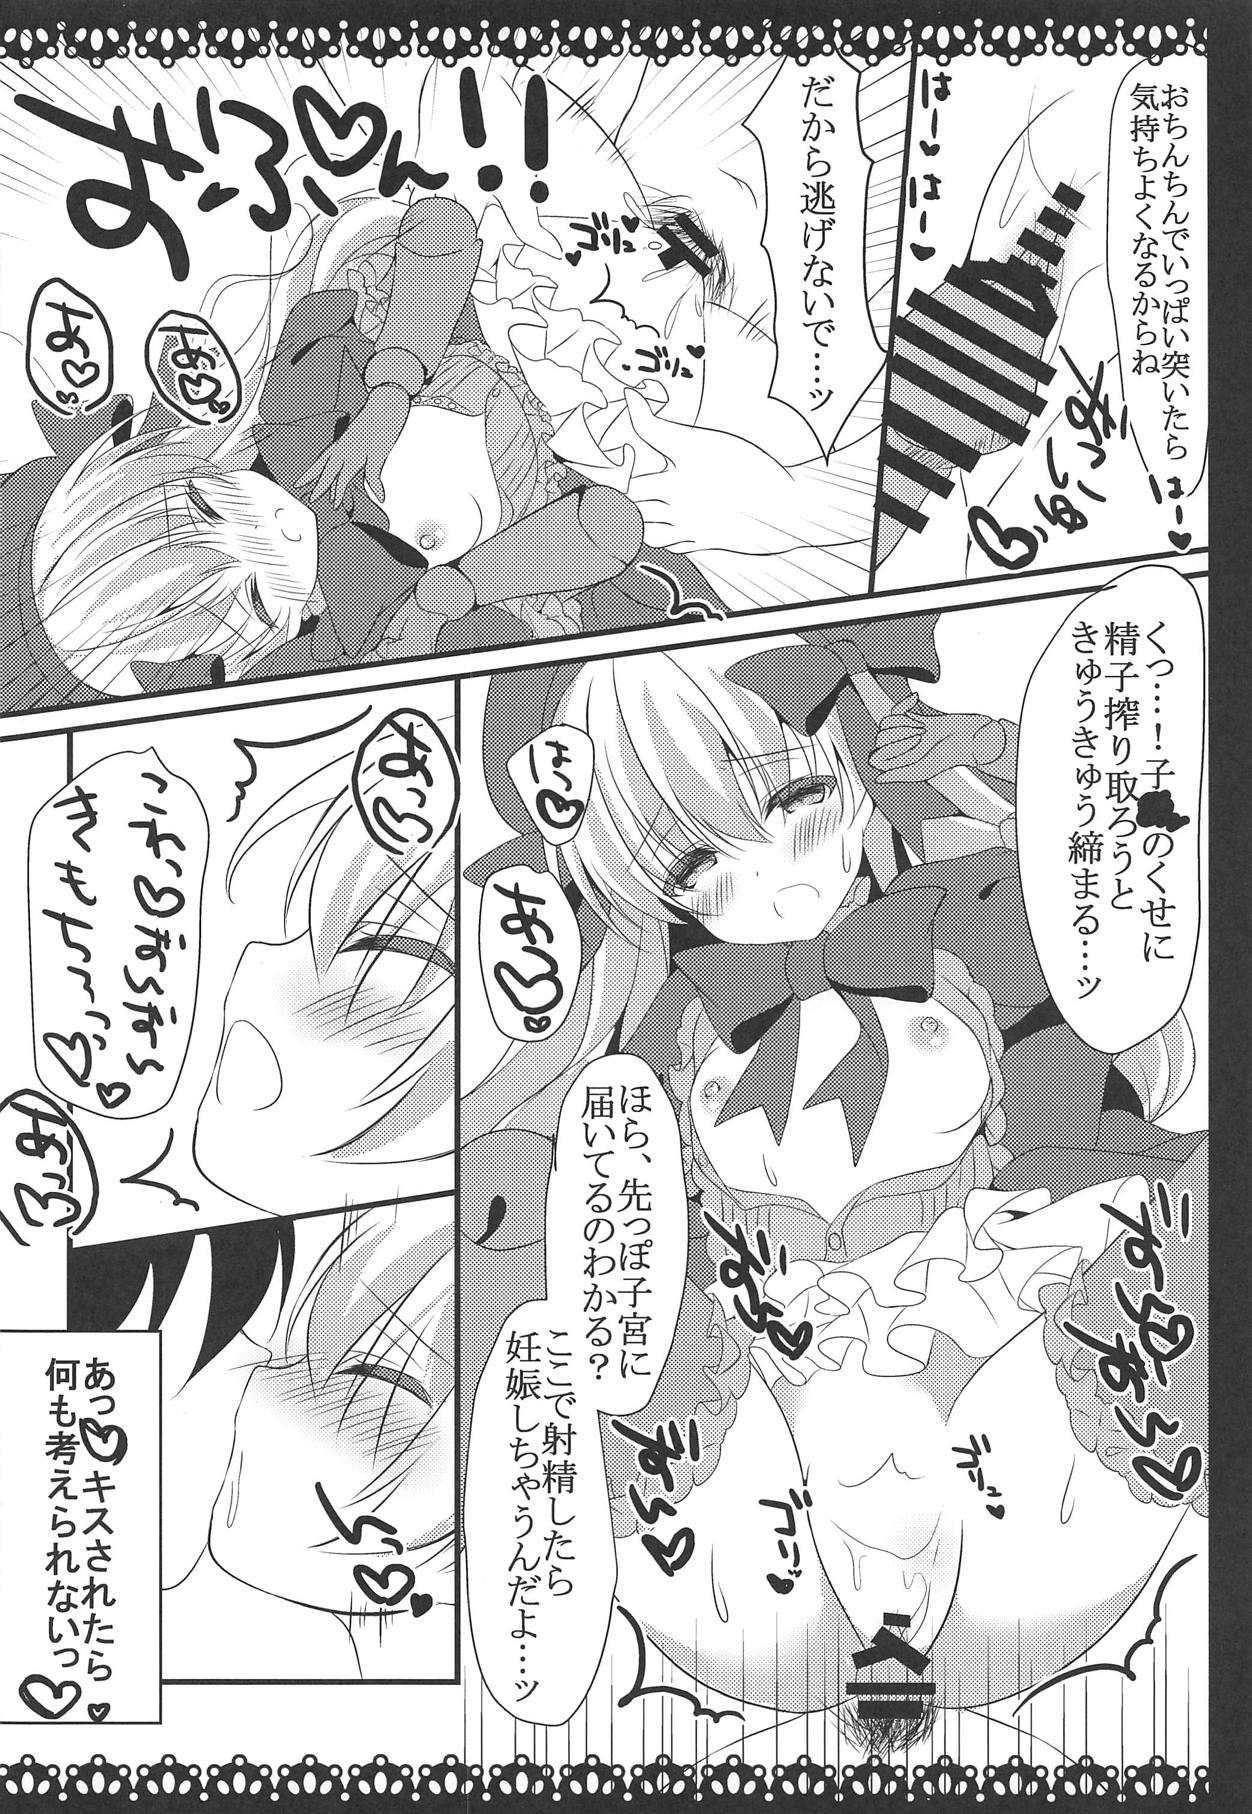 Enema Anata no Tame no Monogatari - Fate grand order Semen - Page 11